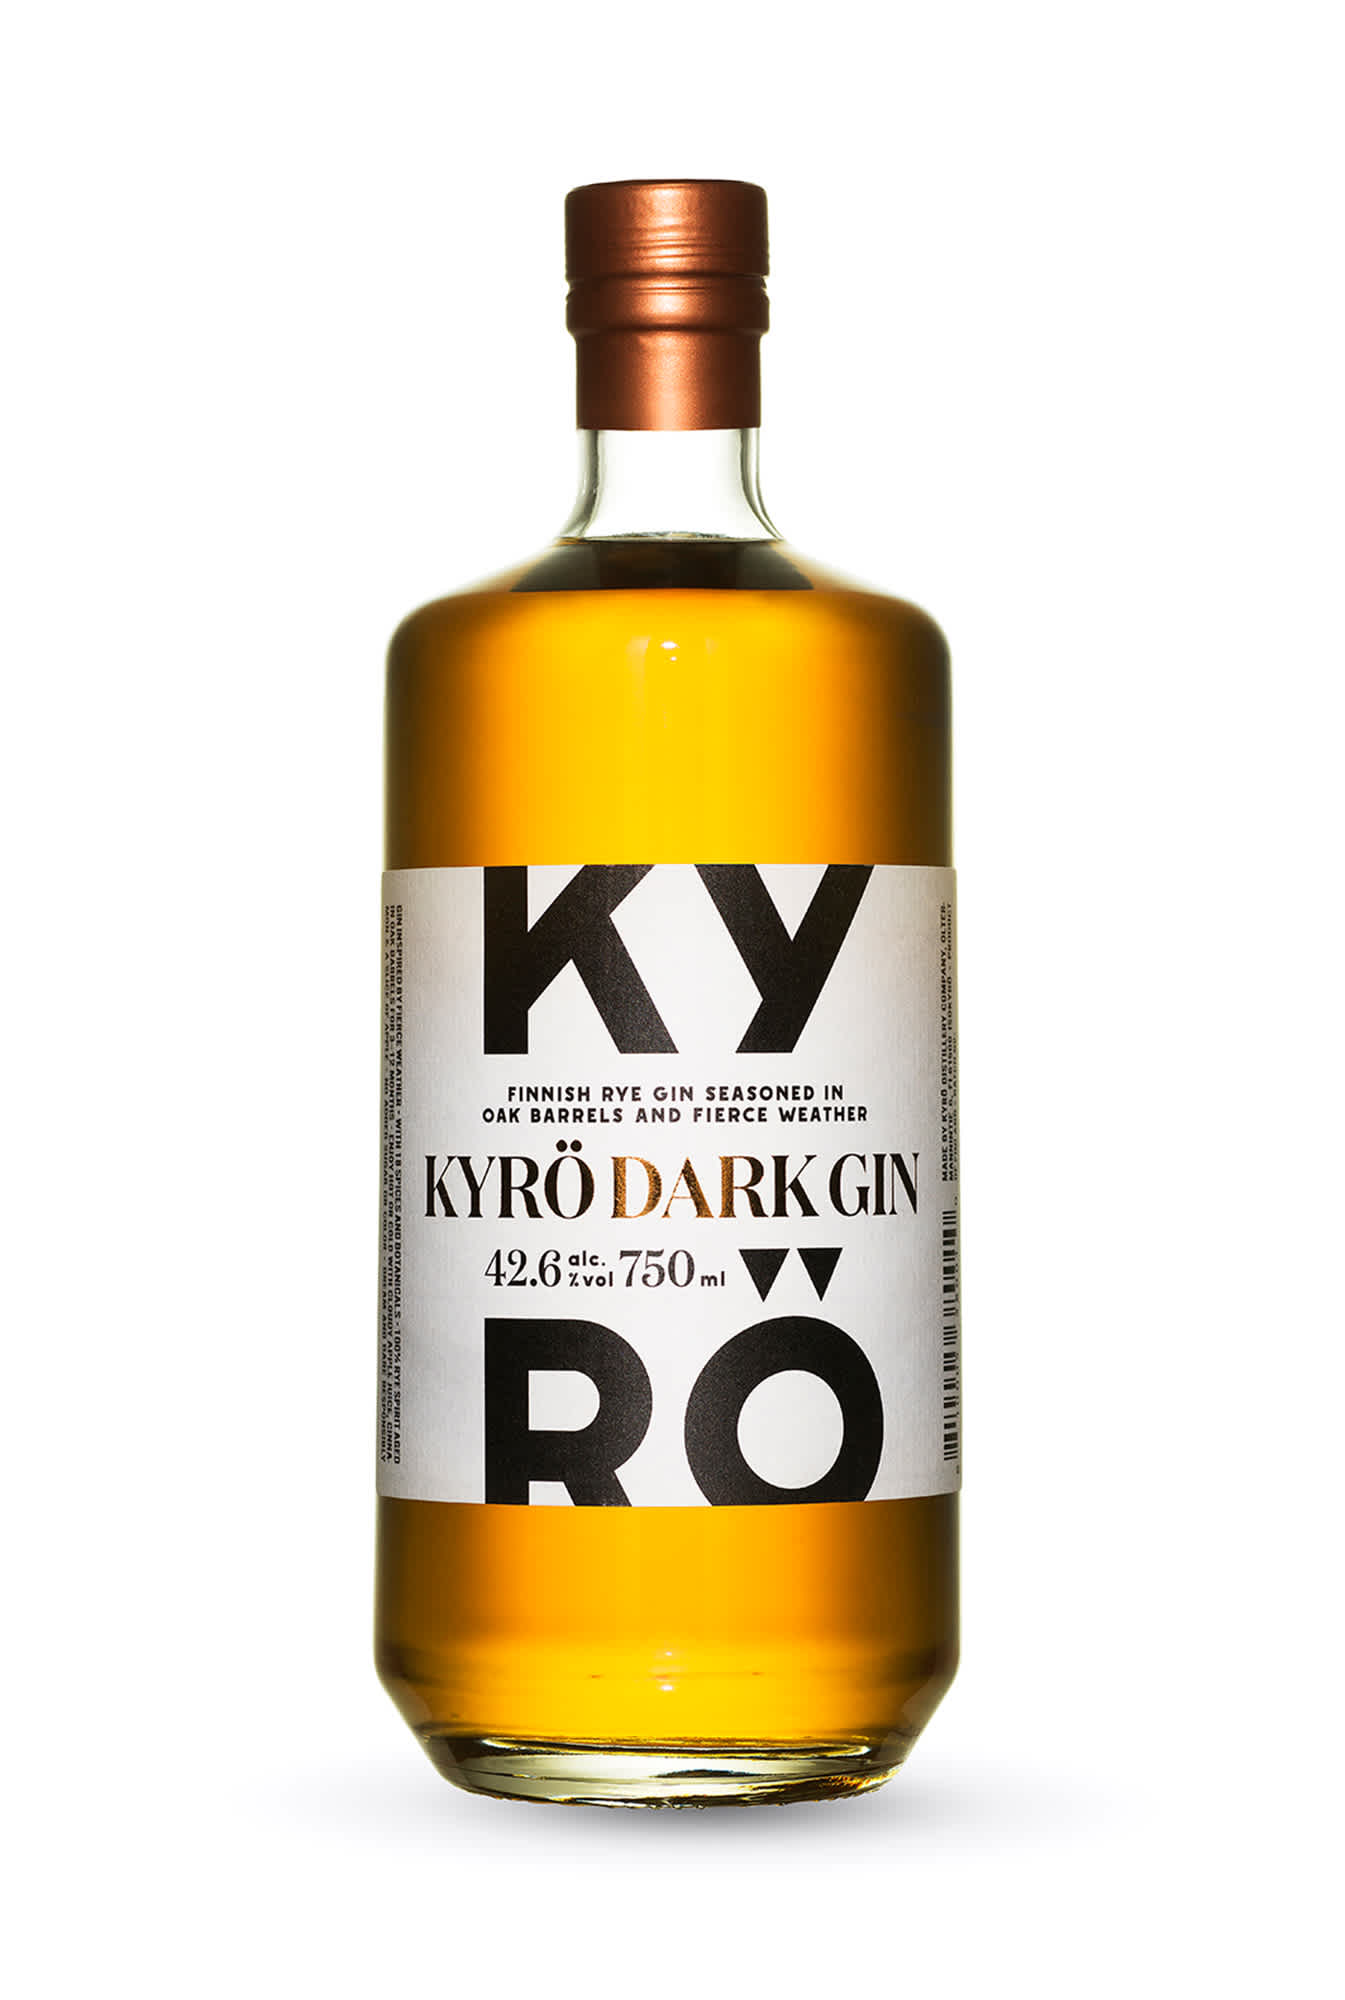 750 ml pullo palkittua tynnyrikypsytettyä Kyrö Dark Giniä, joka aiemmin tunnettiin Koskue-nimellään.